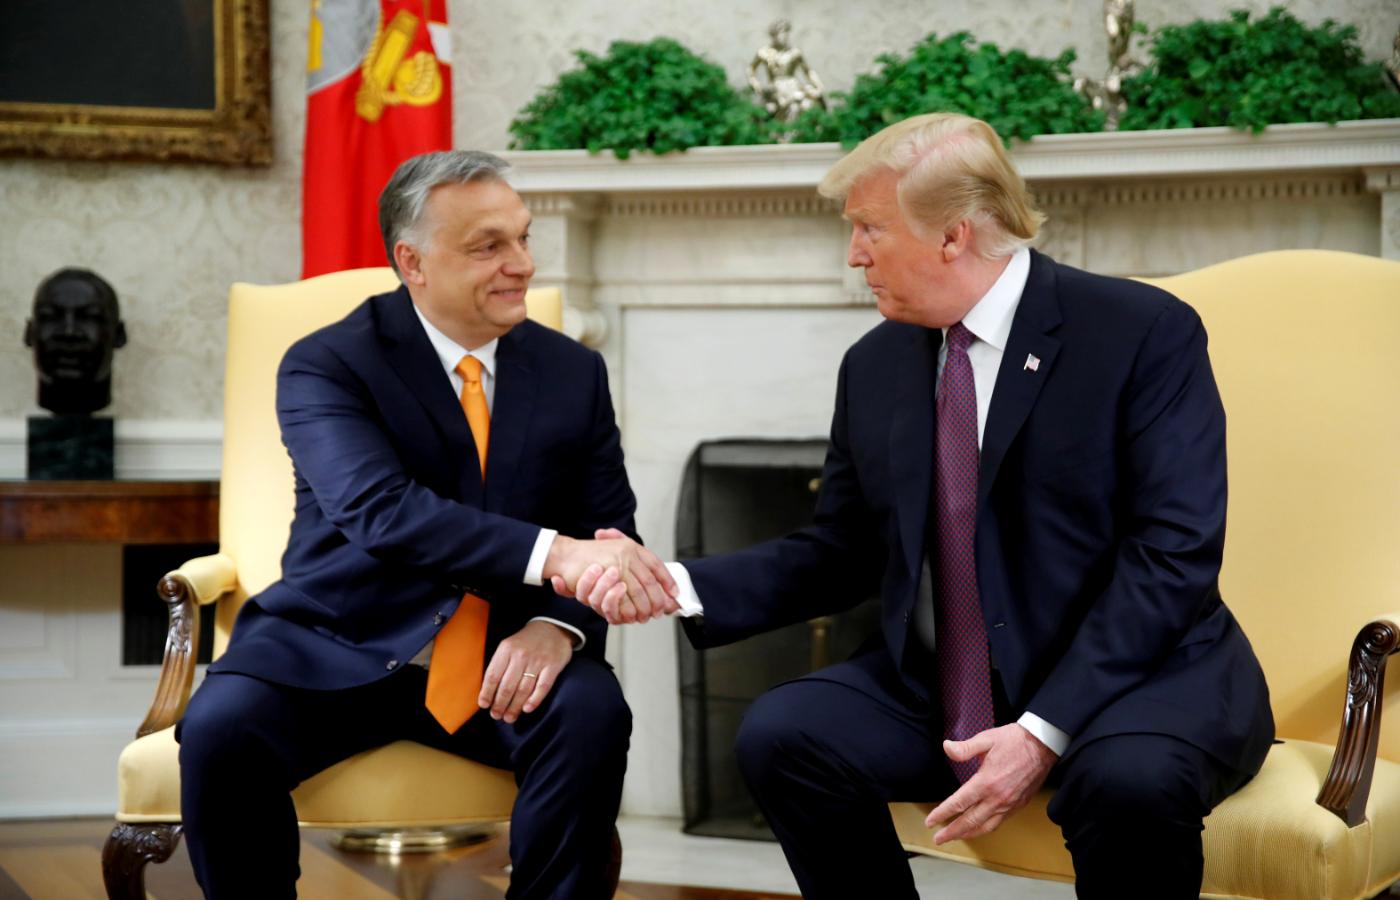 Spotkanie Viktora Orbána z Donaldem Trumpem w Białym Domu